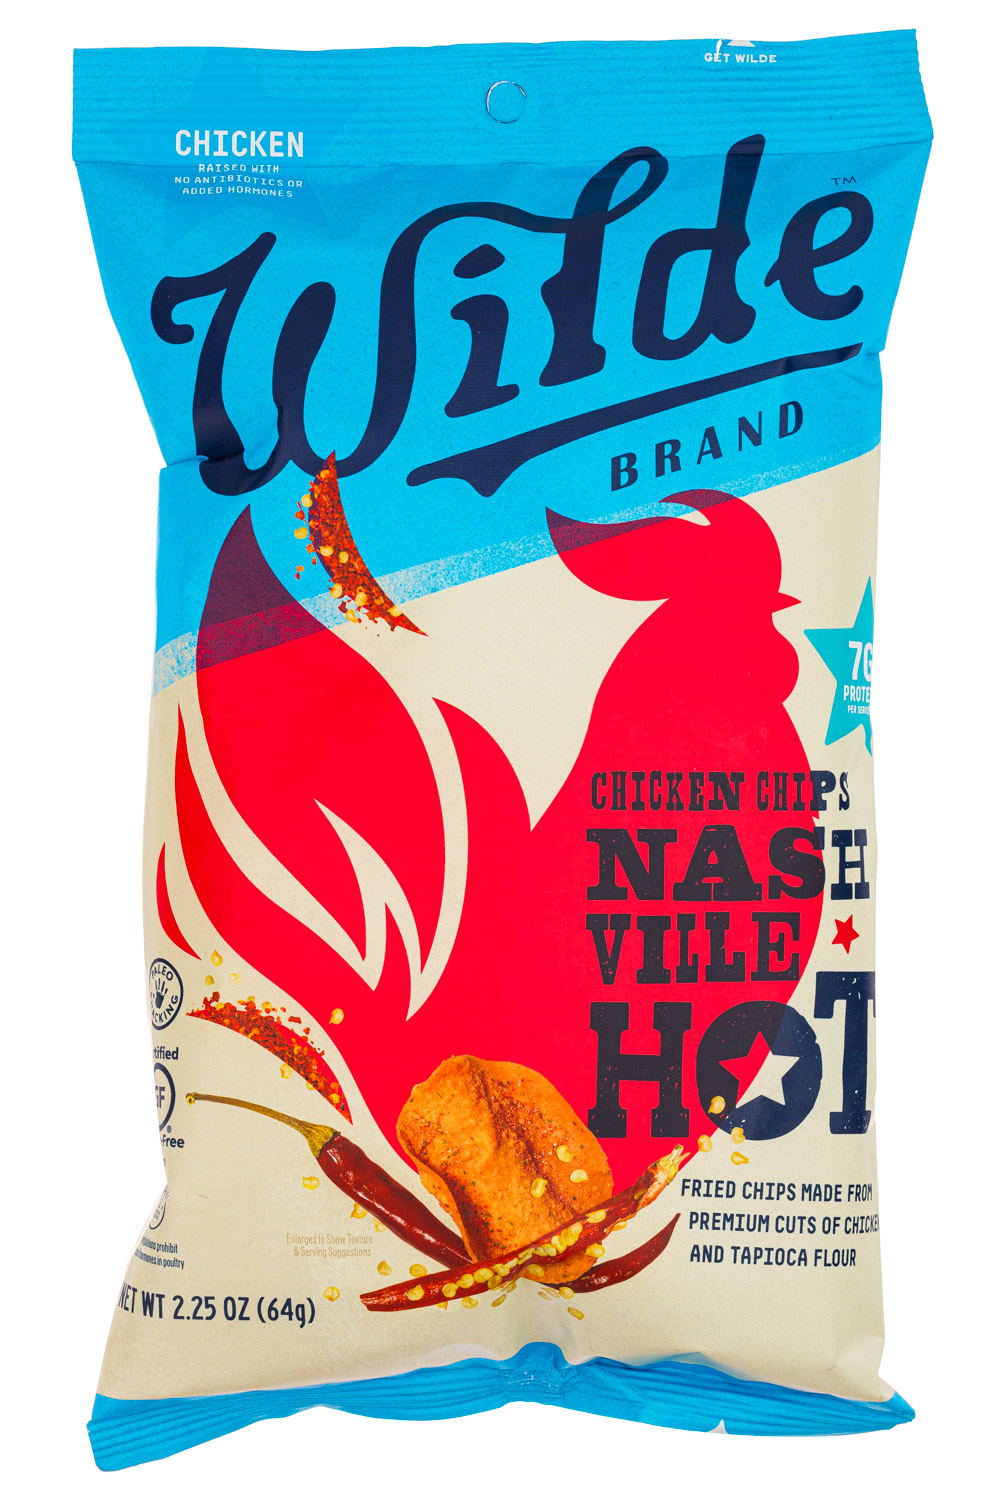 Nash Ville Hot Chicken Chips